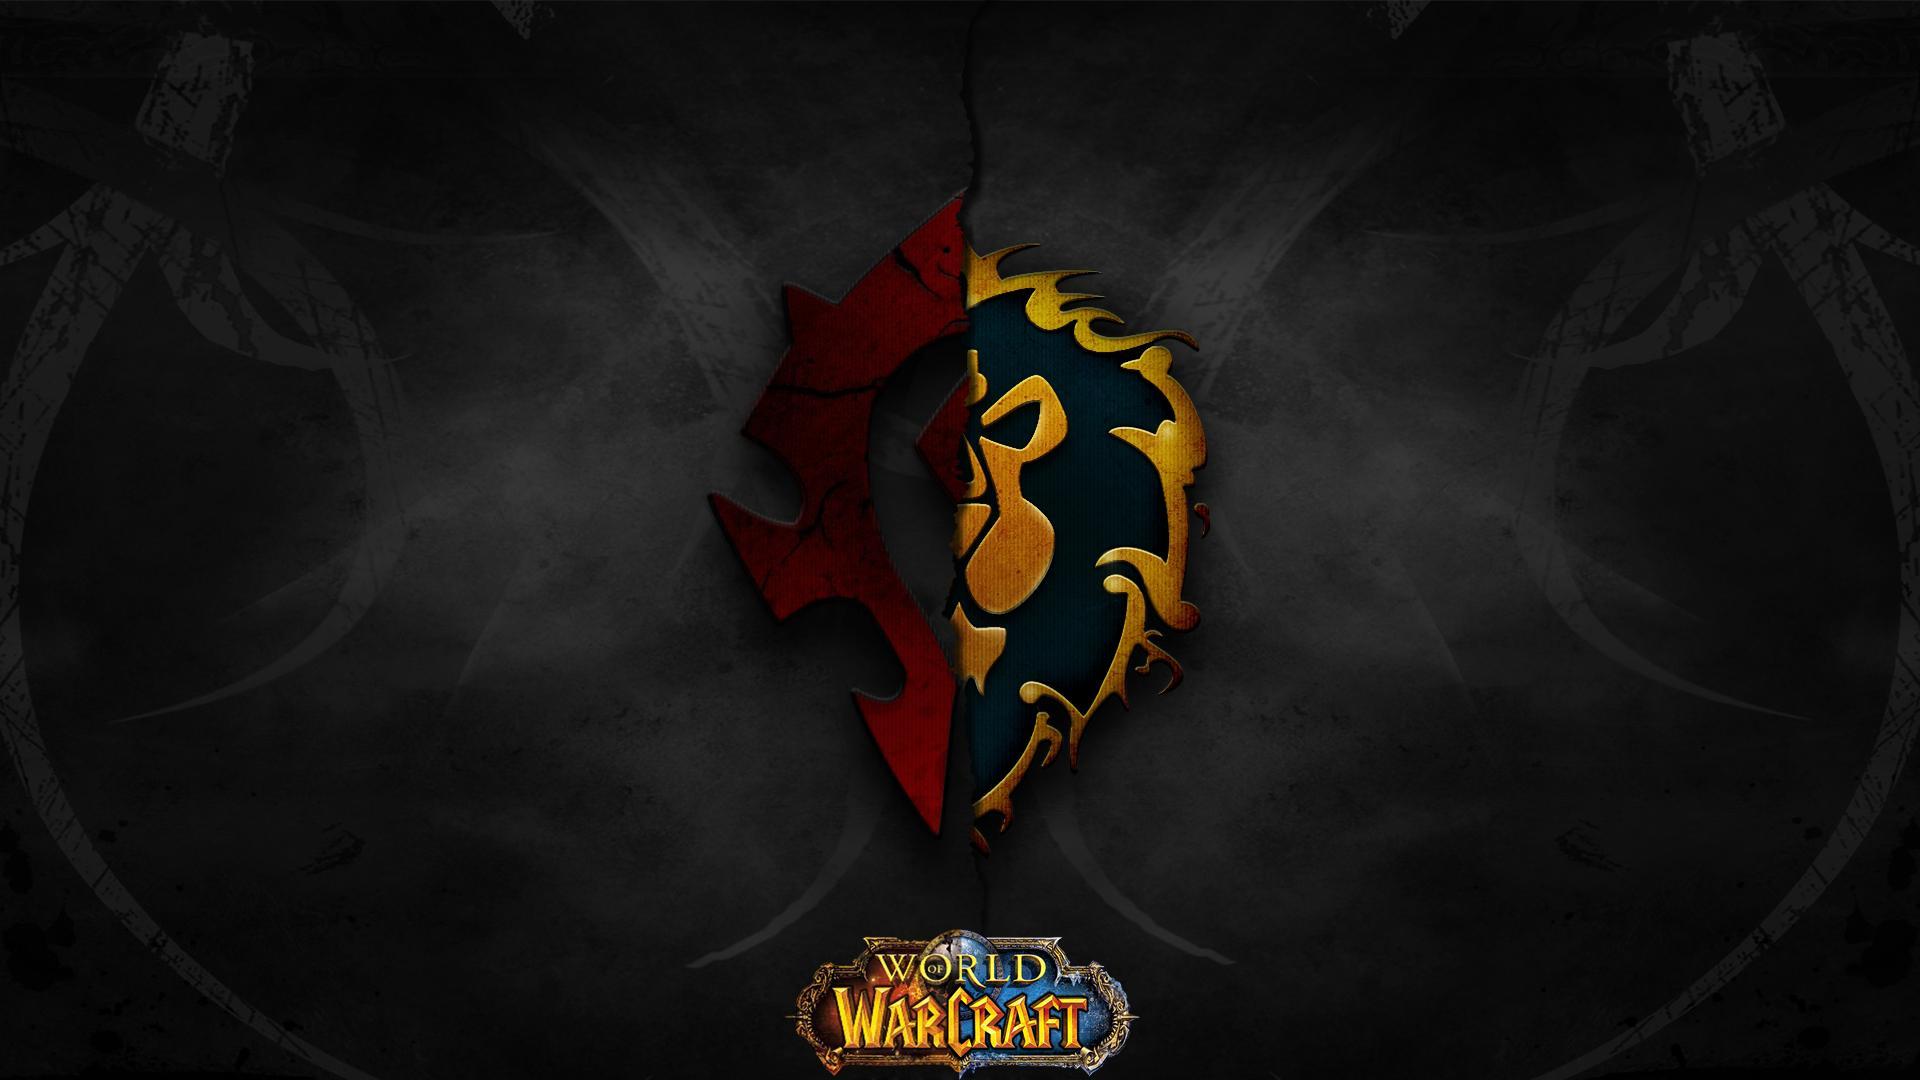 Warcraft Wallpaper Free